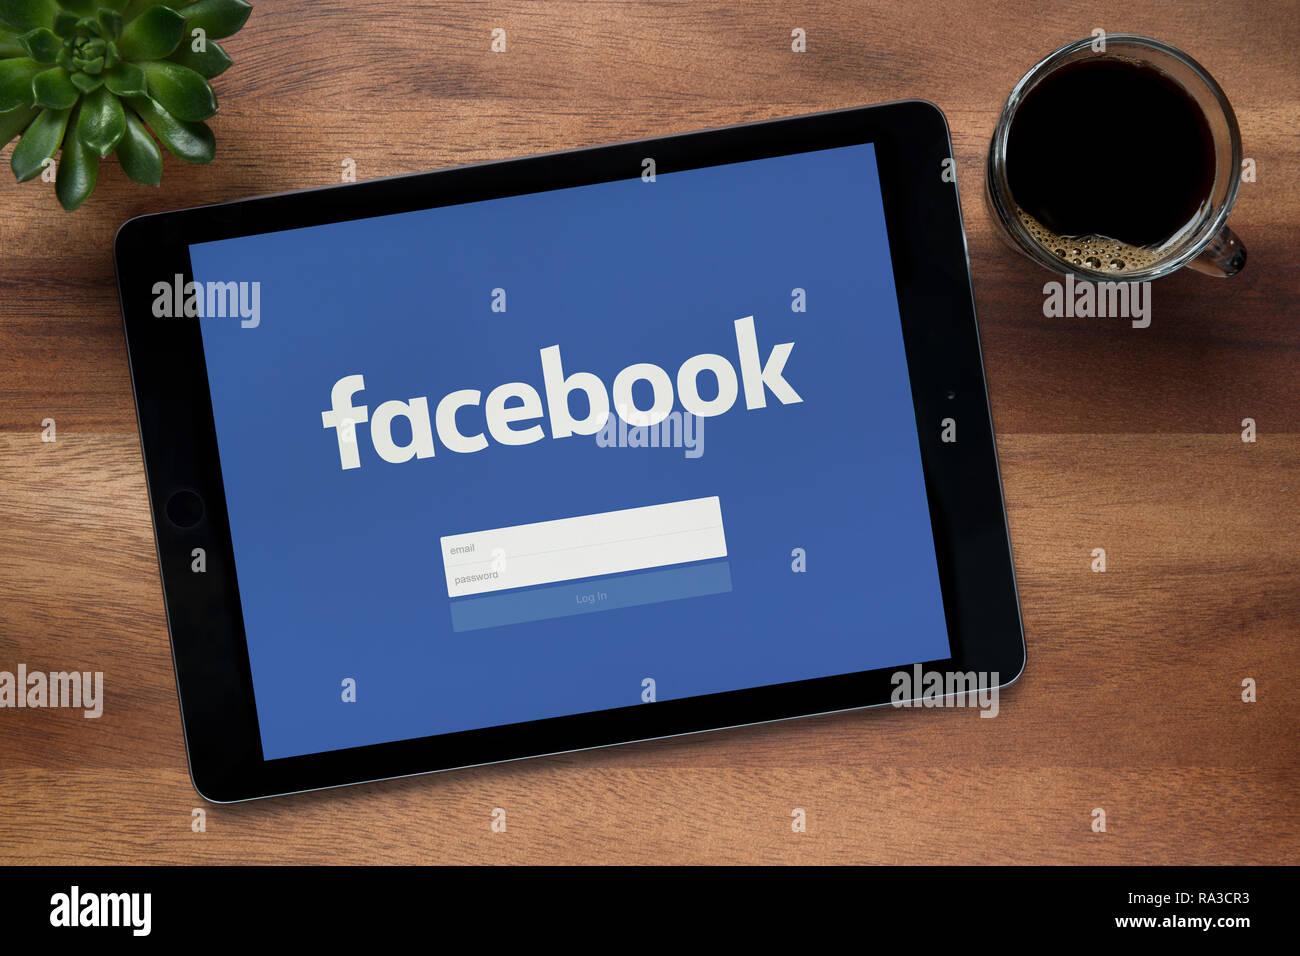 Facebook est vu sur un iPad tablet, sur une table en bois avec une machine à expresso et d'une plante (usage éditorial uniquement). Banque D'Images